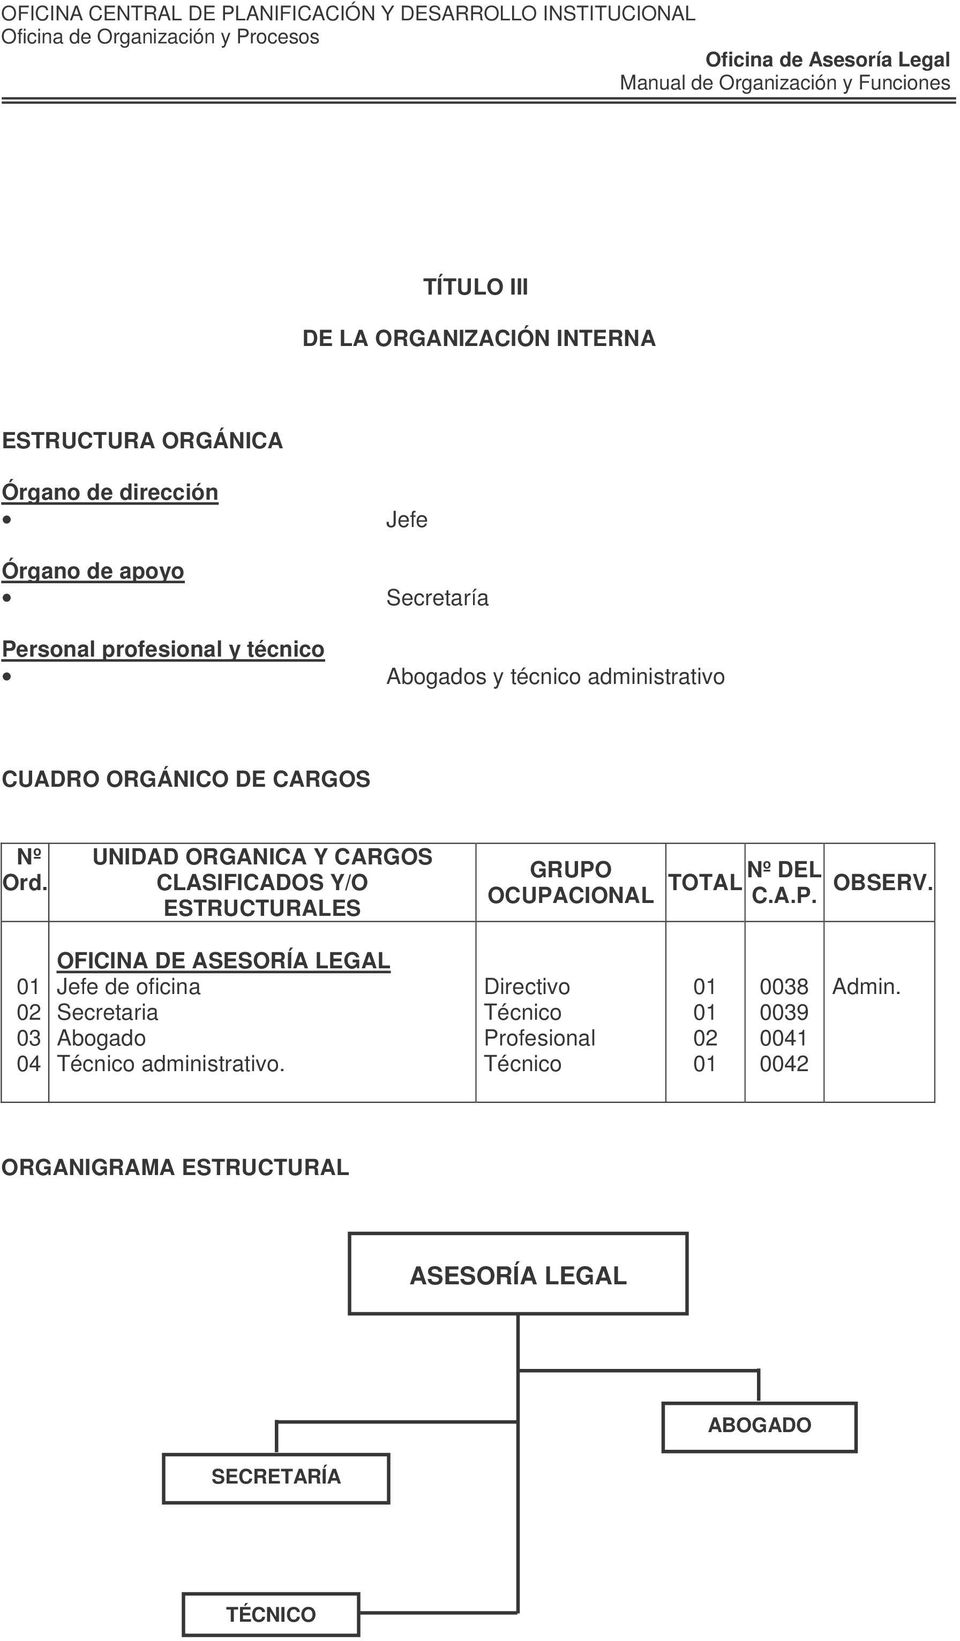 UNIDAD ORGANICA Y CARGOS CLASIFICADOS Y/O ESTRUCTURALES GRUPO OCUPACIONAL TOTAL Nº DEL C.A.P. OBSERV.